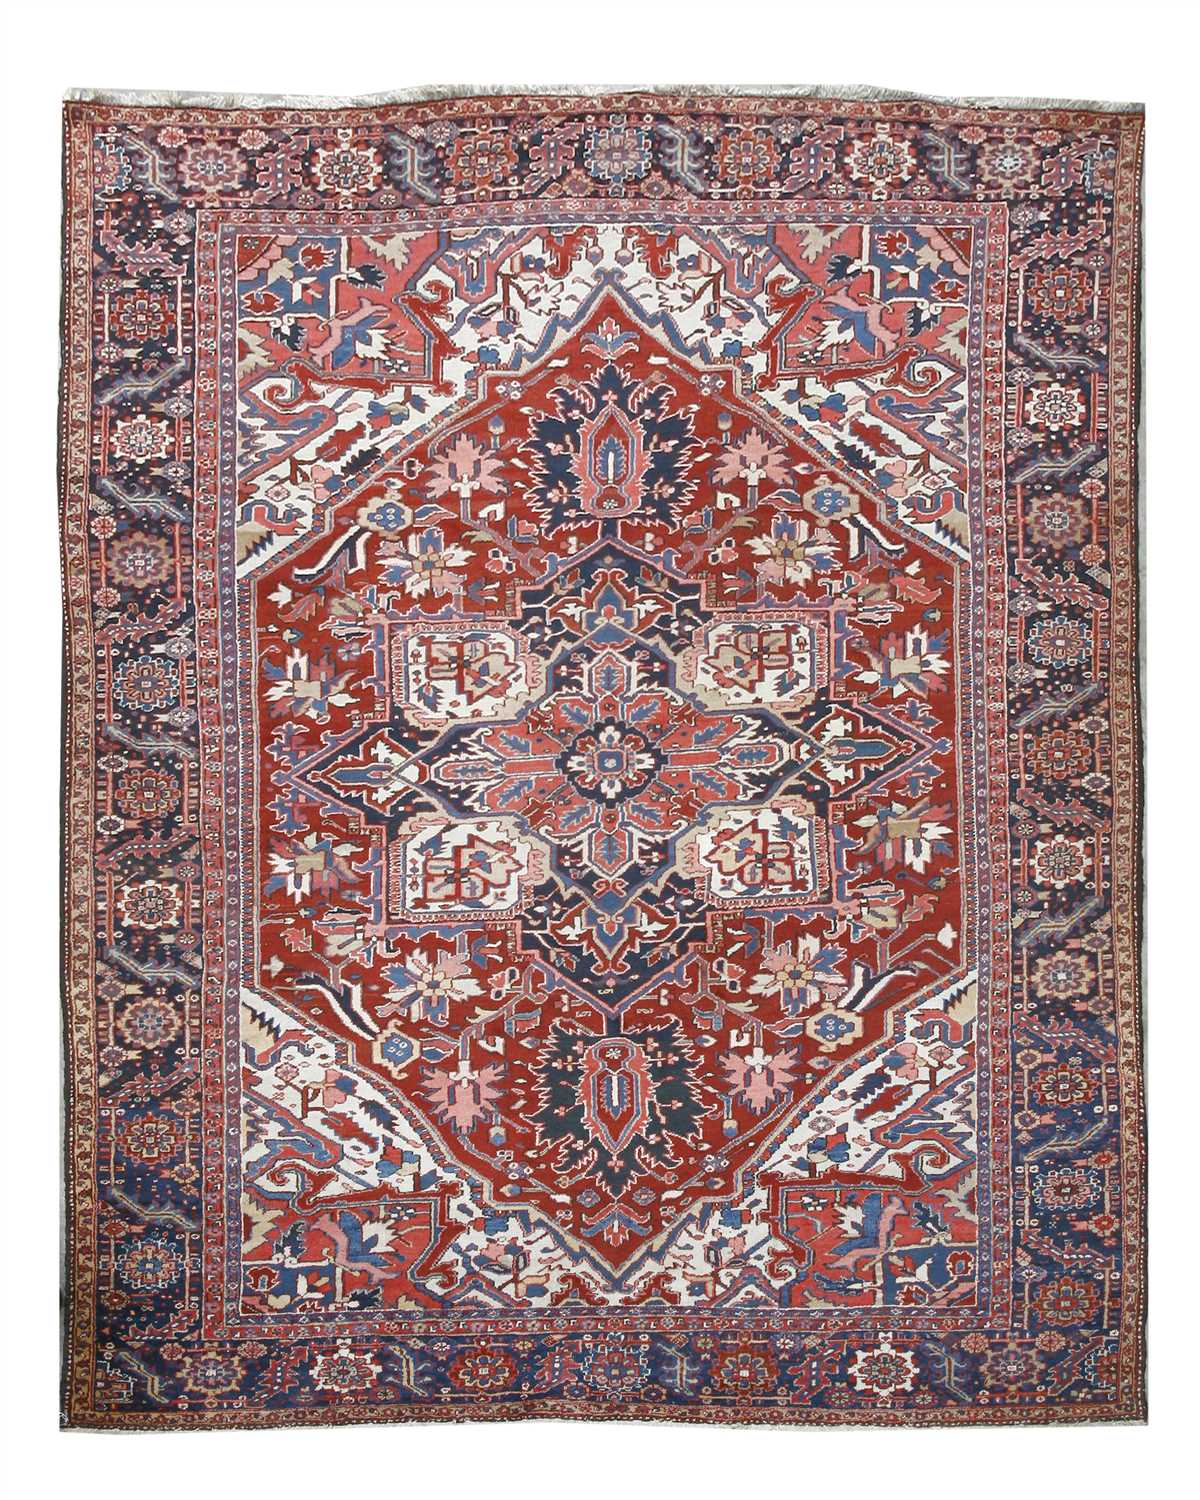 An Heriz carpet,